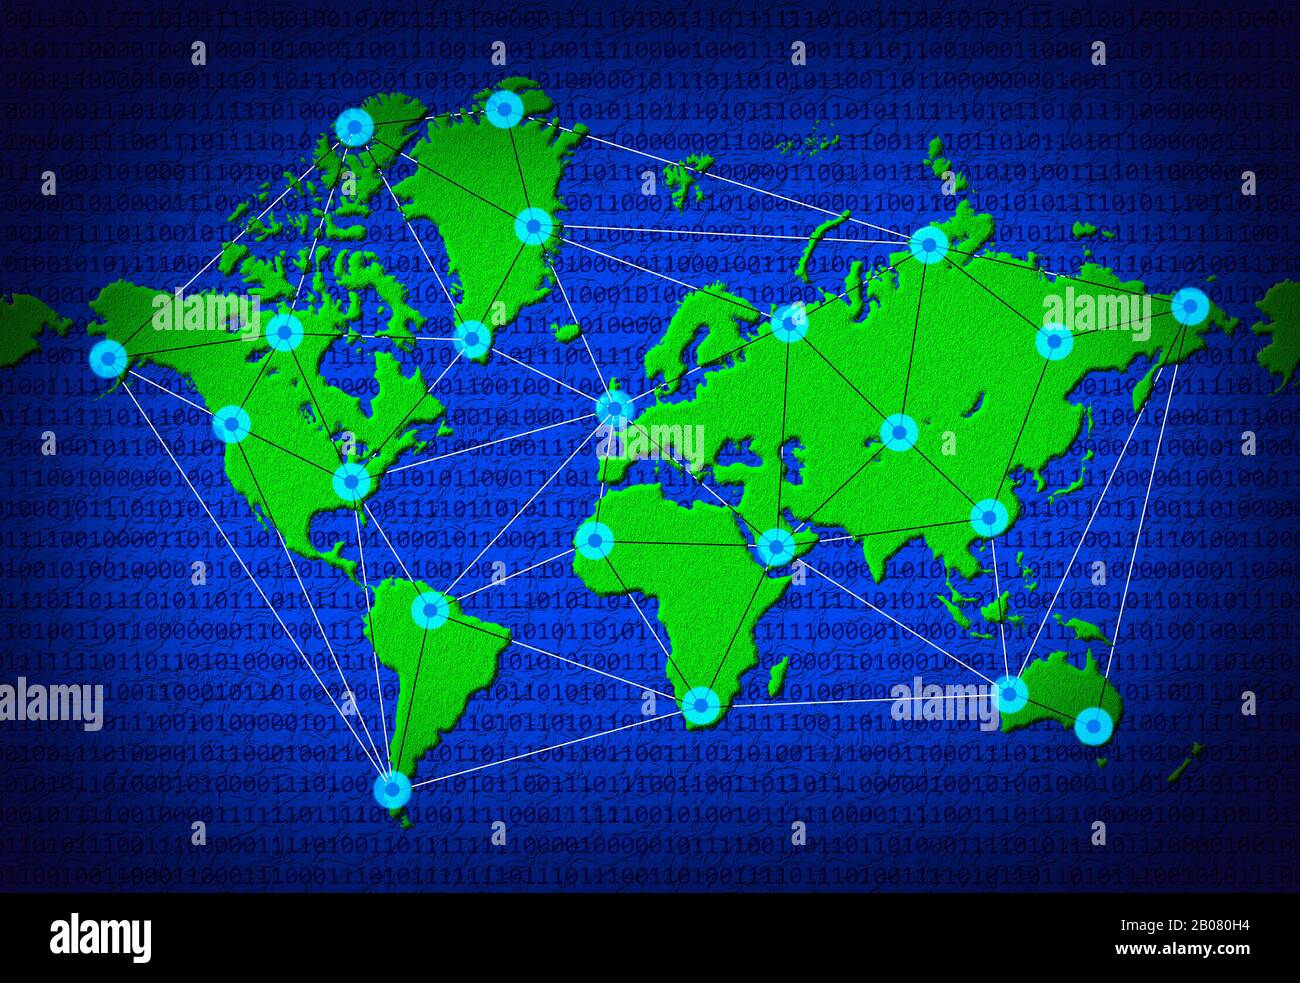 Informazioni sul concetto Internet e sulla connettività dei dati a livello  mondiale. Il globo 2D mostra linee di dati e nodi di dati collegati tra i  paesi del mondo Foto stock -